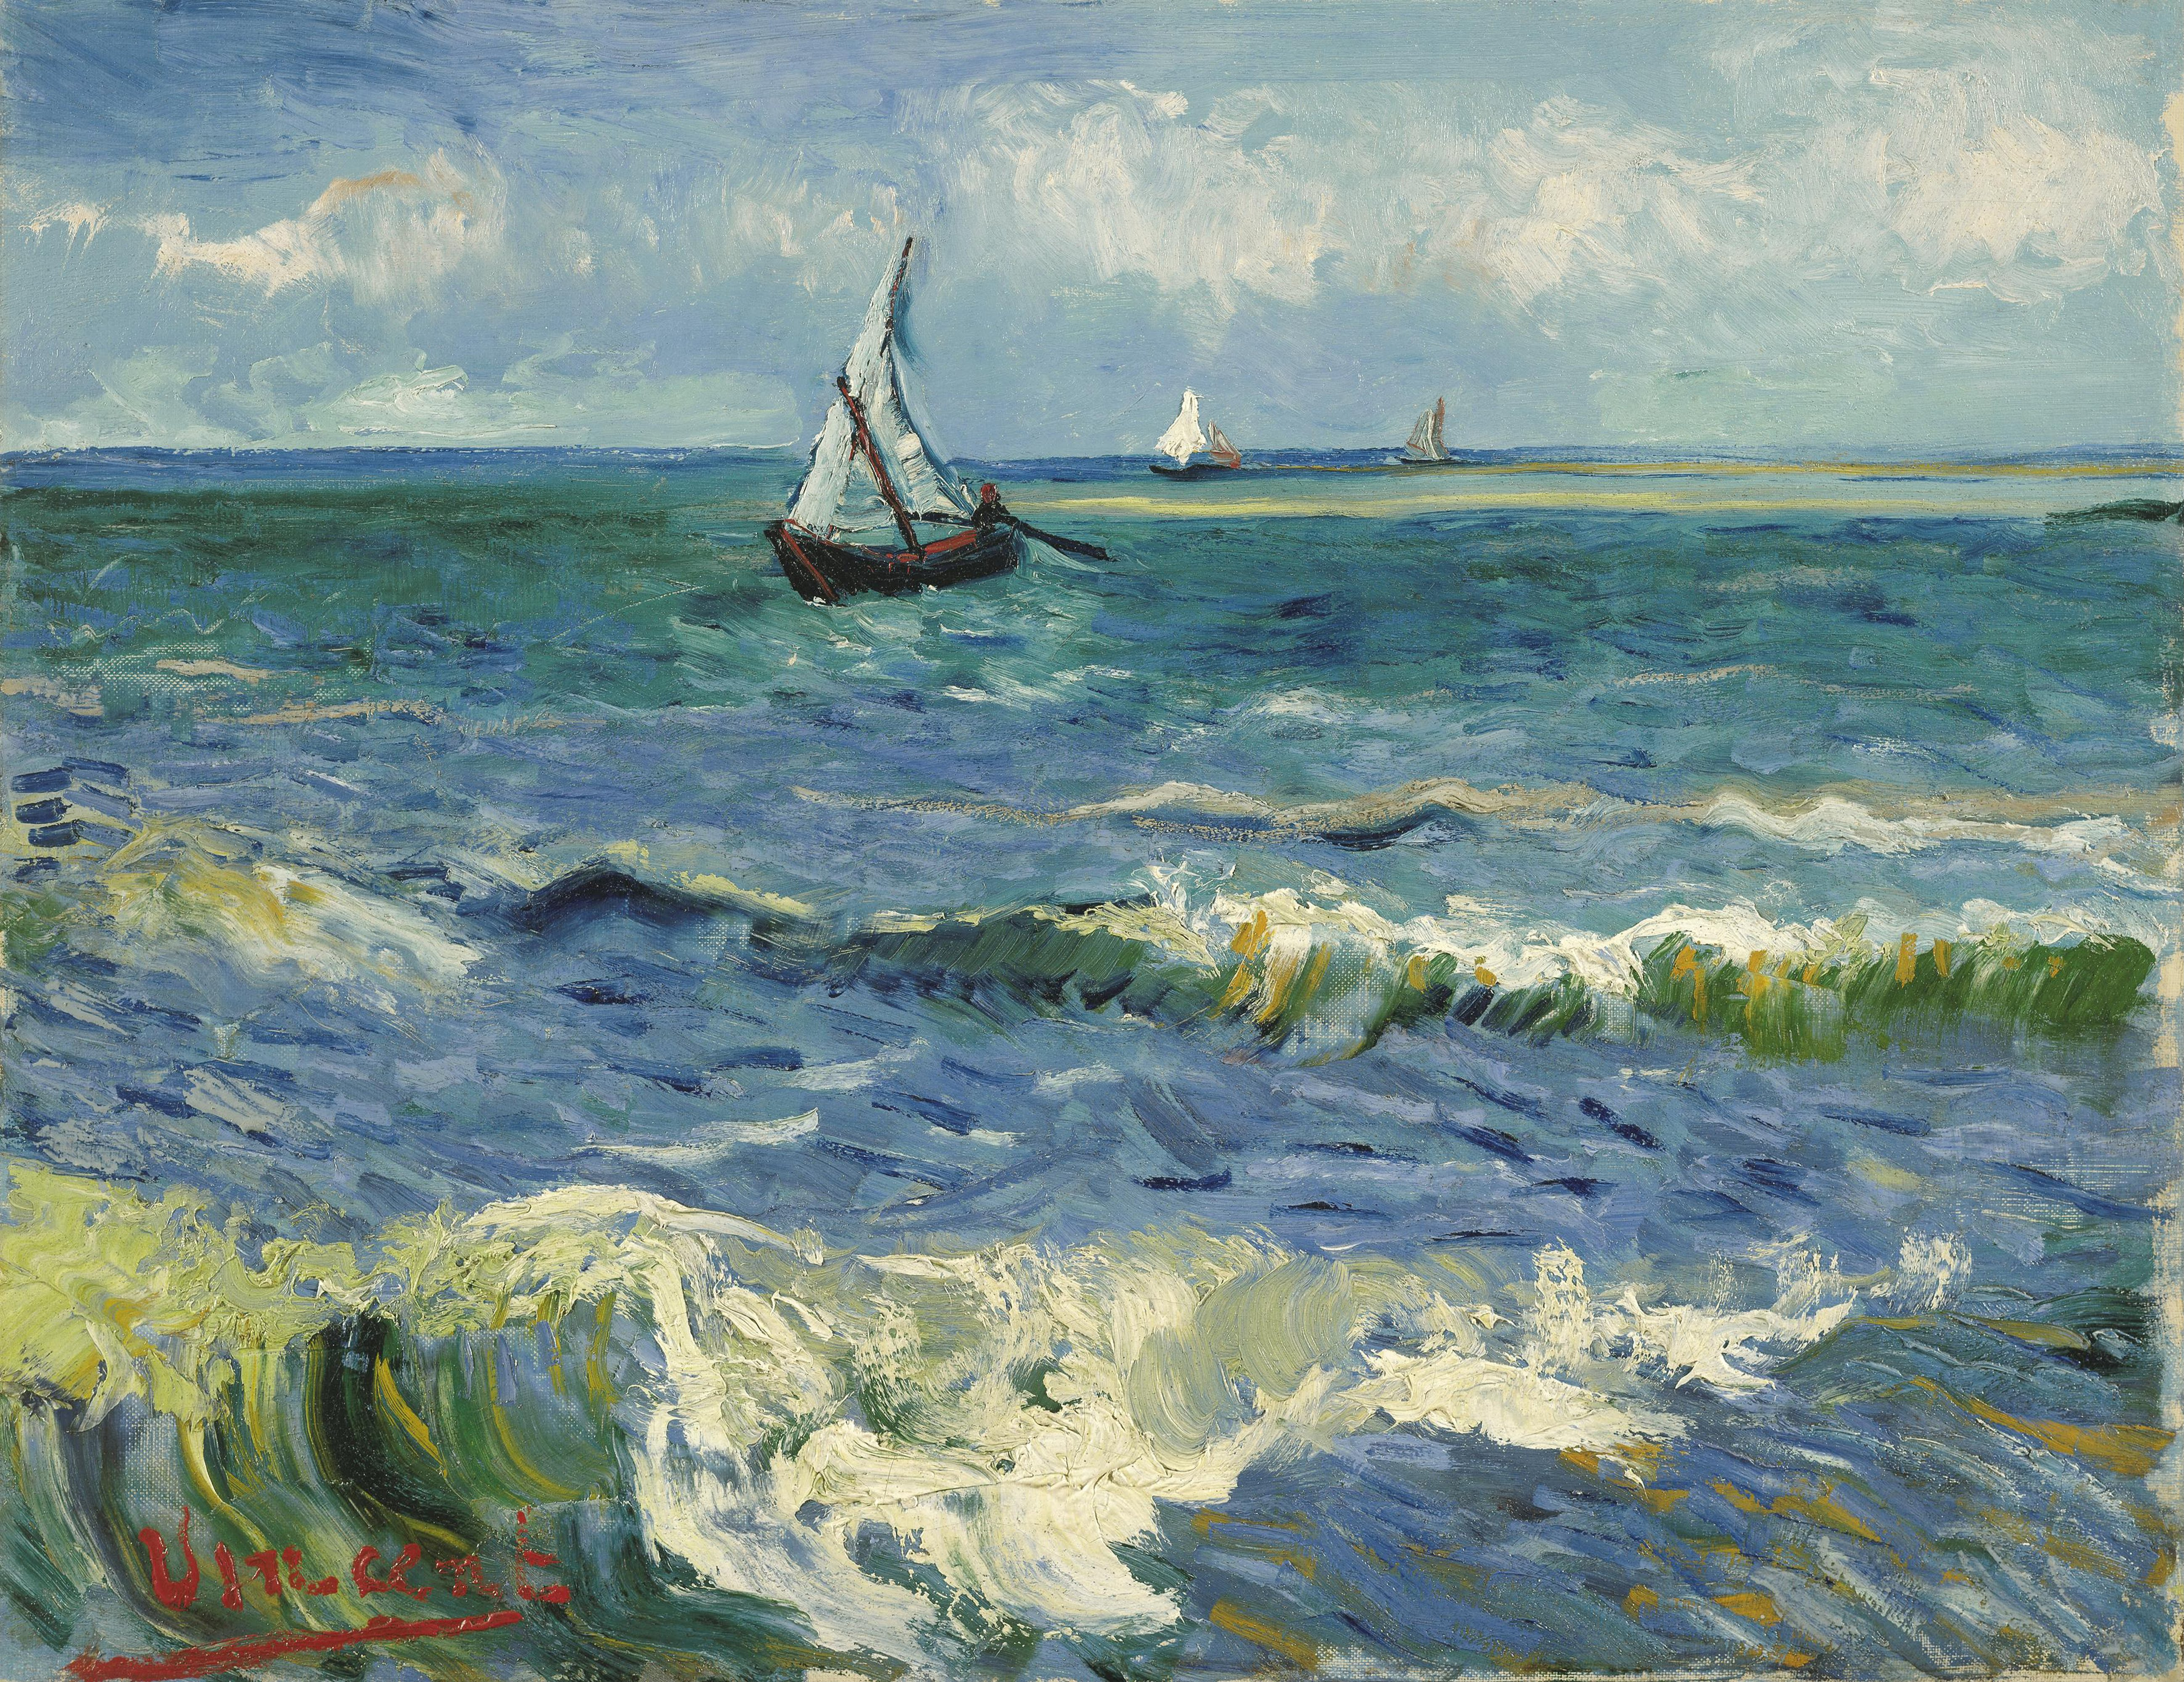 Les Saintes-Maries-de-la-Mer Yakınlarında Deniz Manzarası by Vincent van Gogh - 1888 - 50.5 x 64.3 cm Van Gogh Müzesi